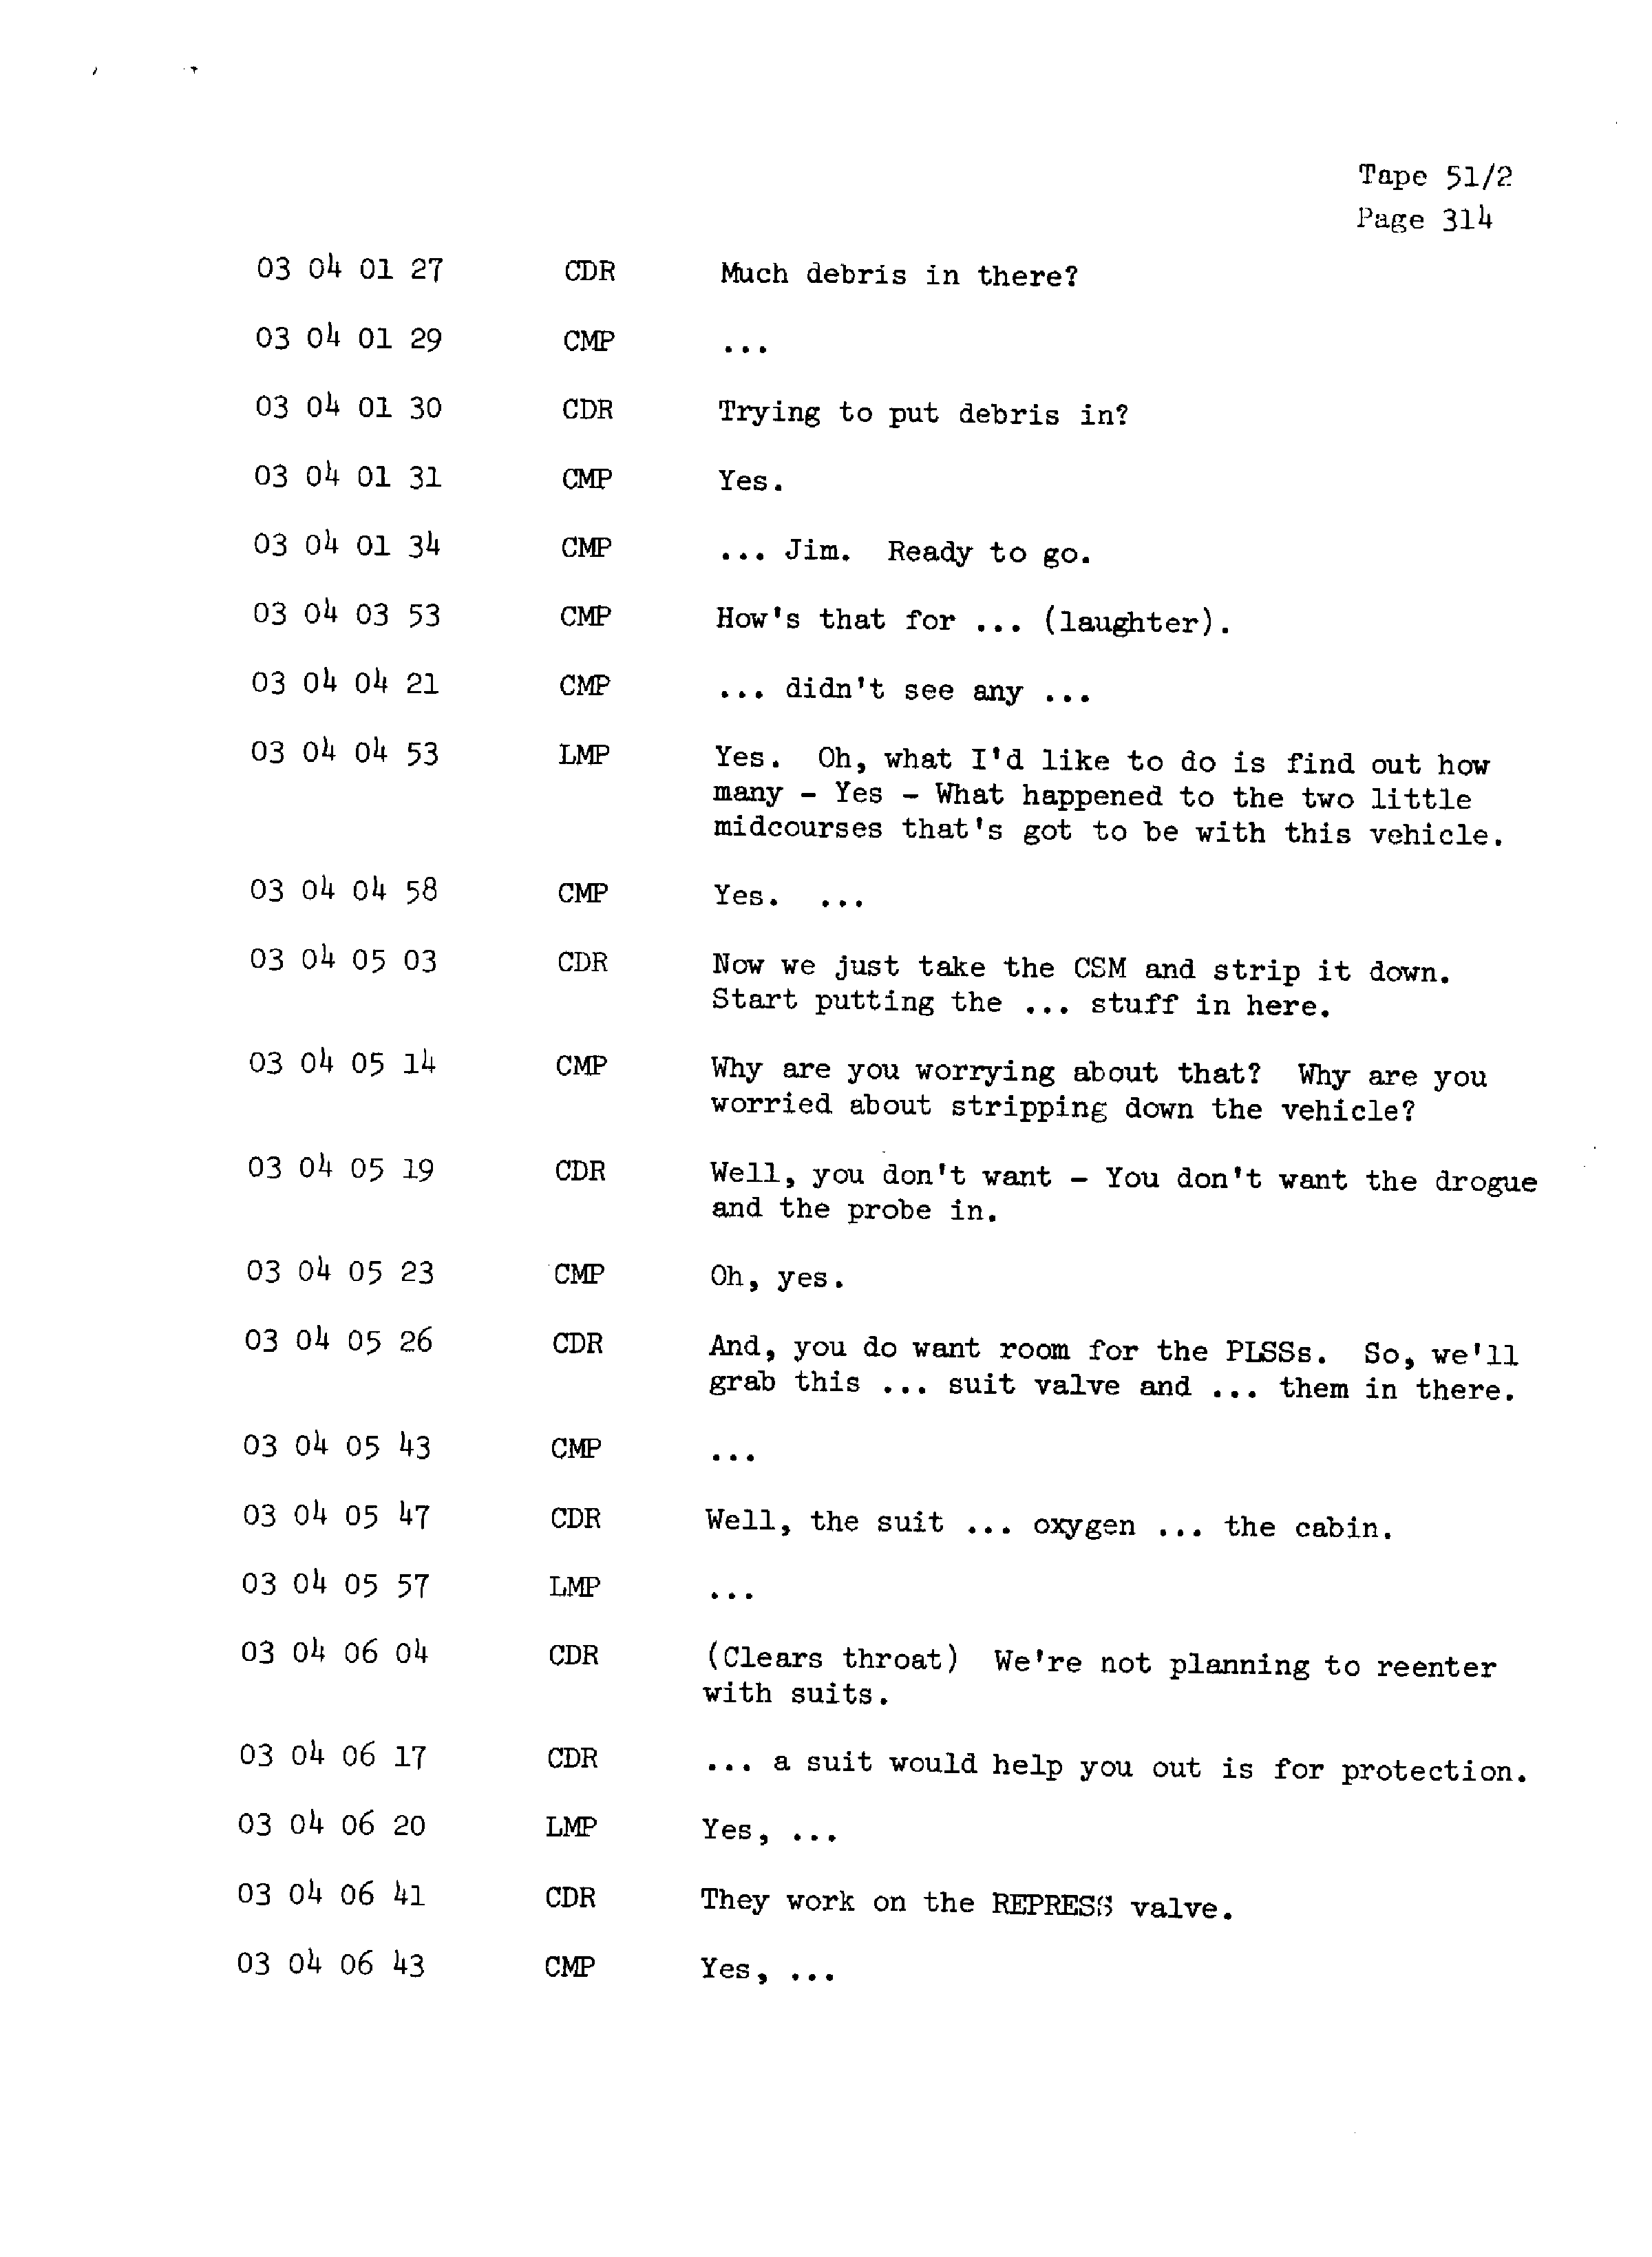 Page 321 of Apollo 13’s original transcript